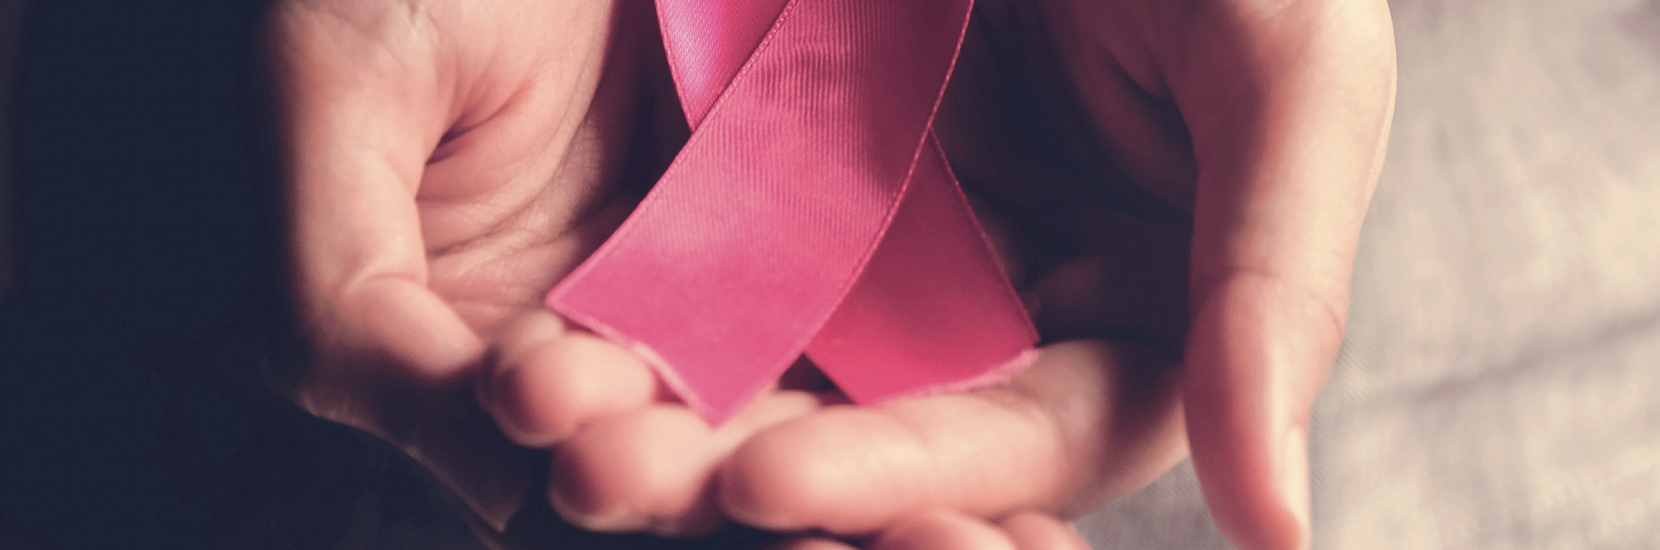 4 idées reçues sur la mammographie